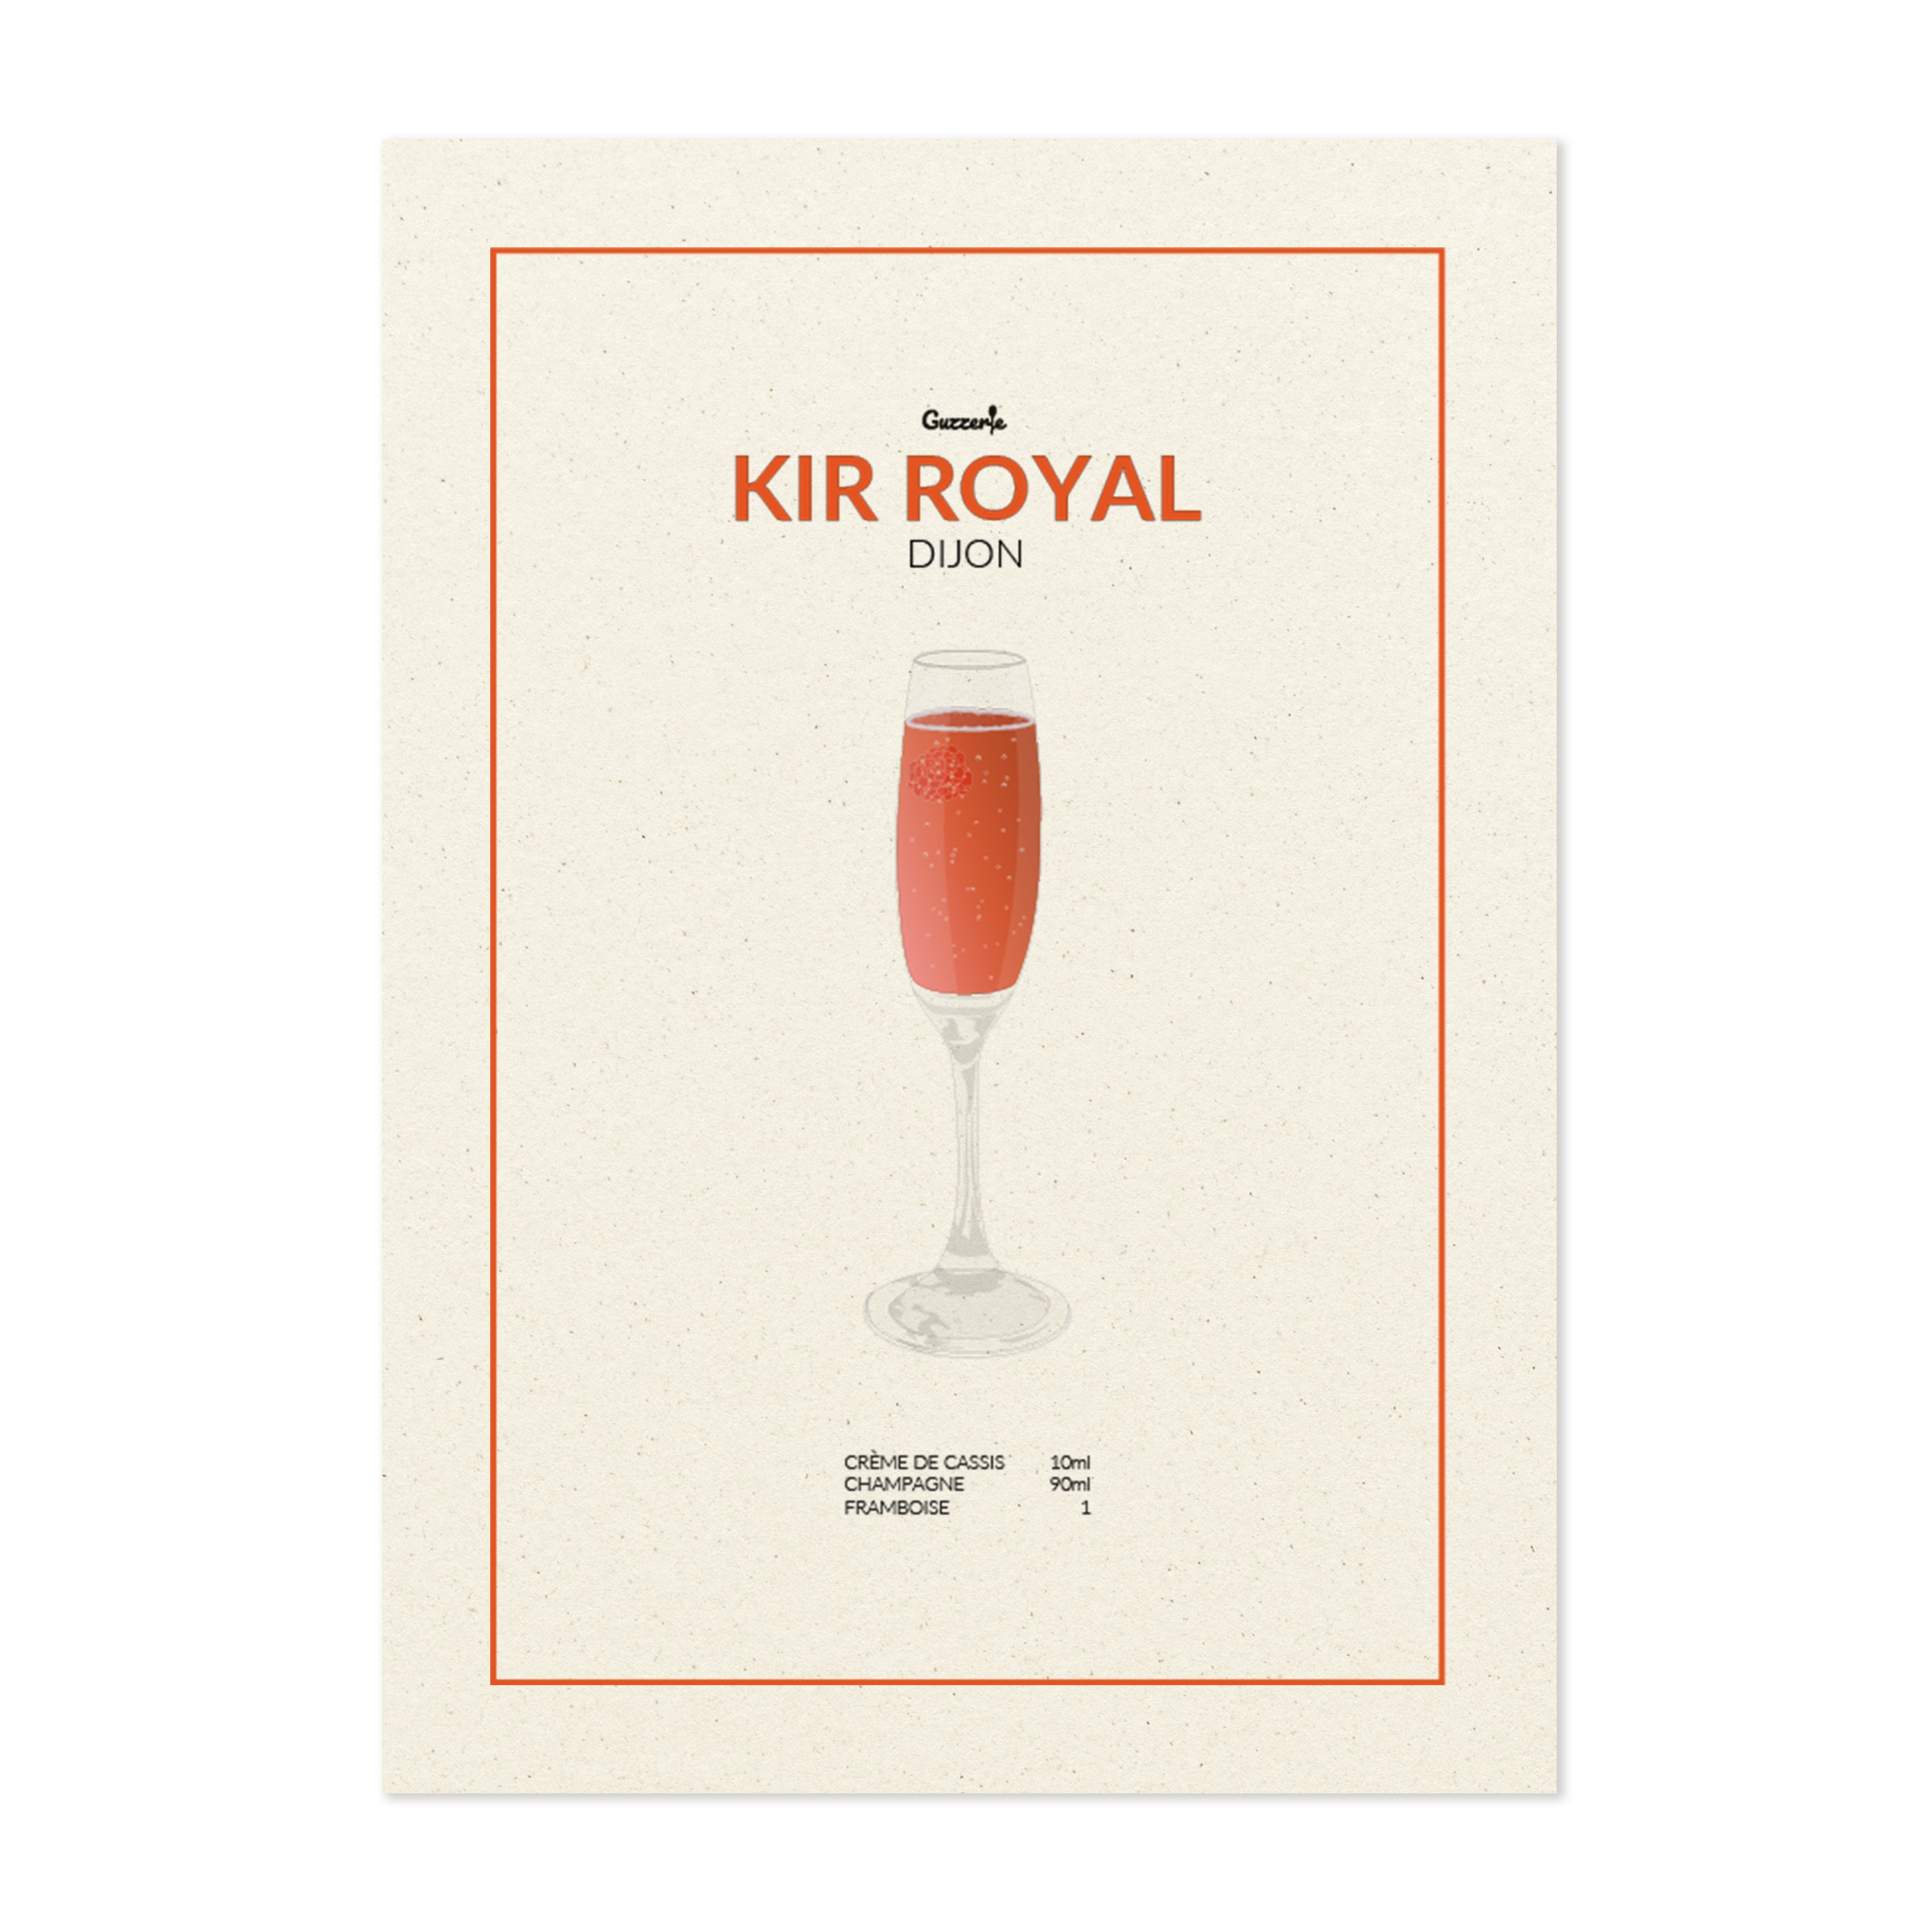 Kir Royal